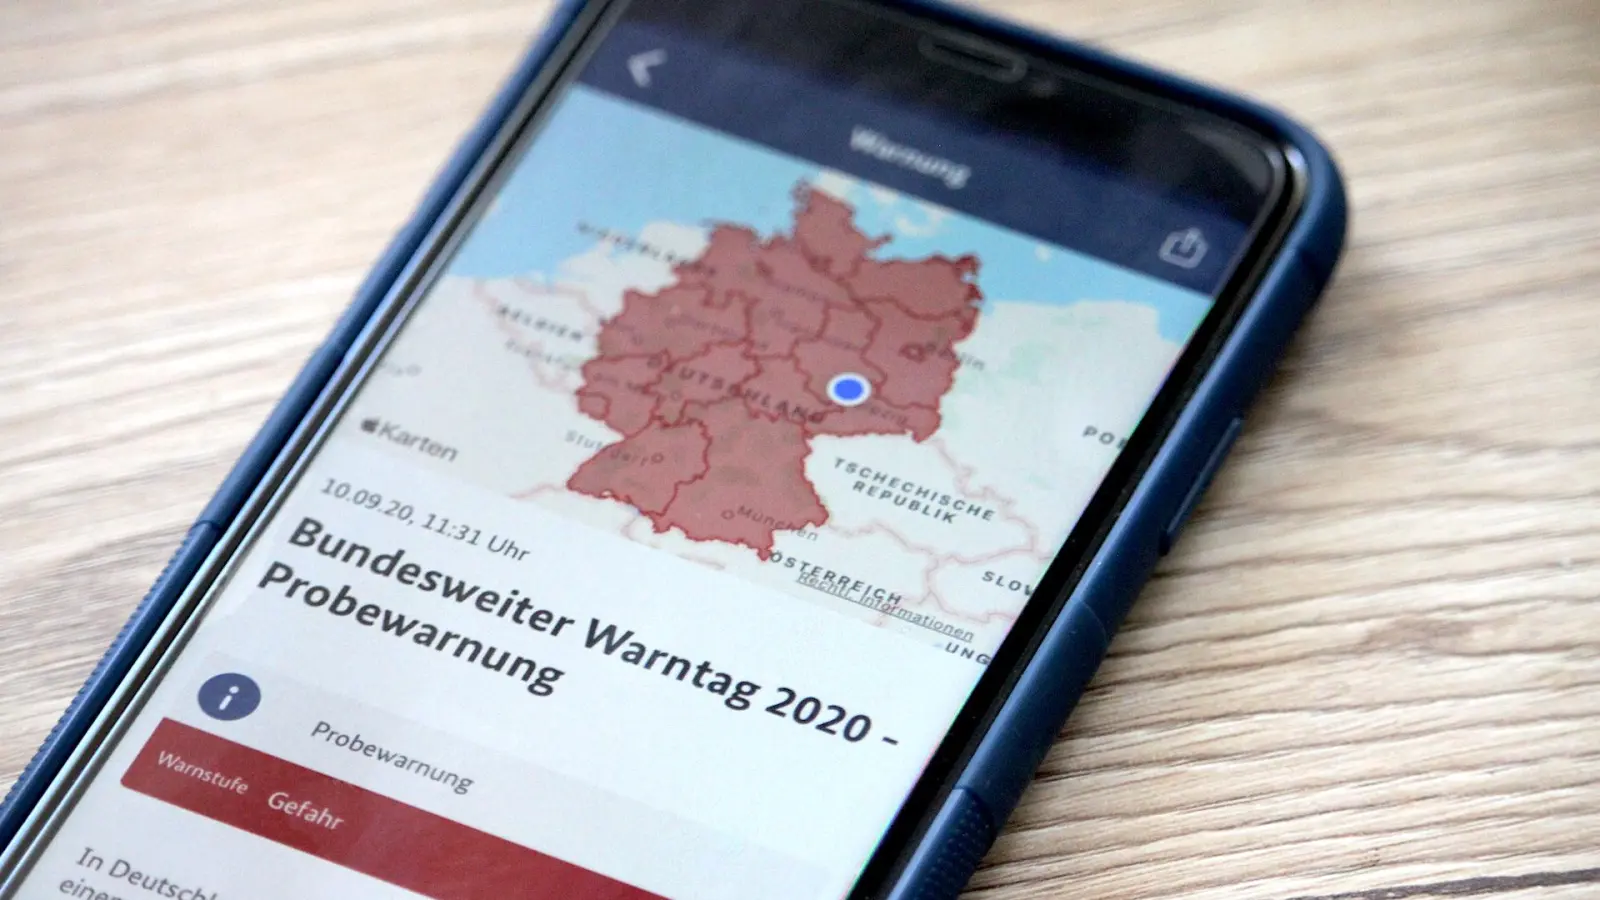 Bundesweiter Warntag: NINA-App warnt zu spät (Foto: taucha-kompakt.de)